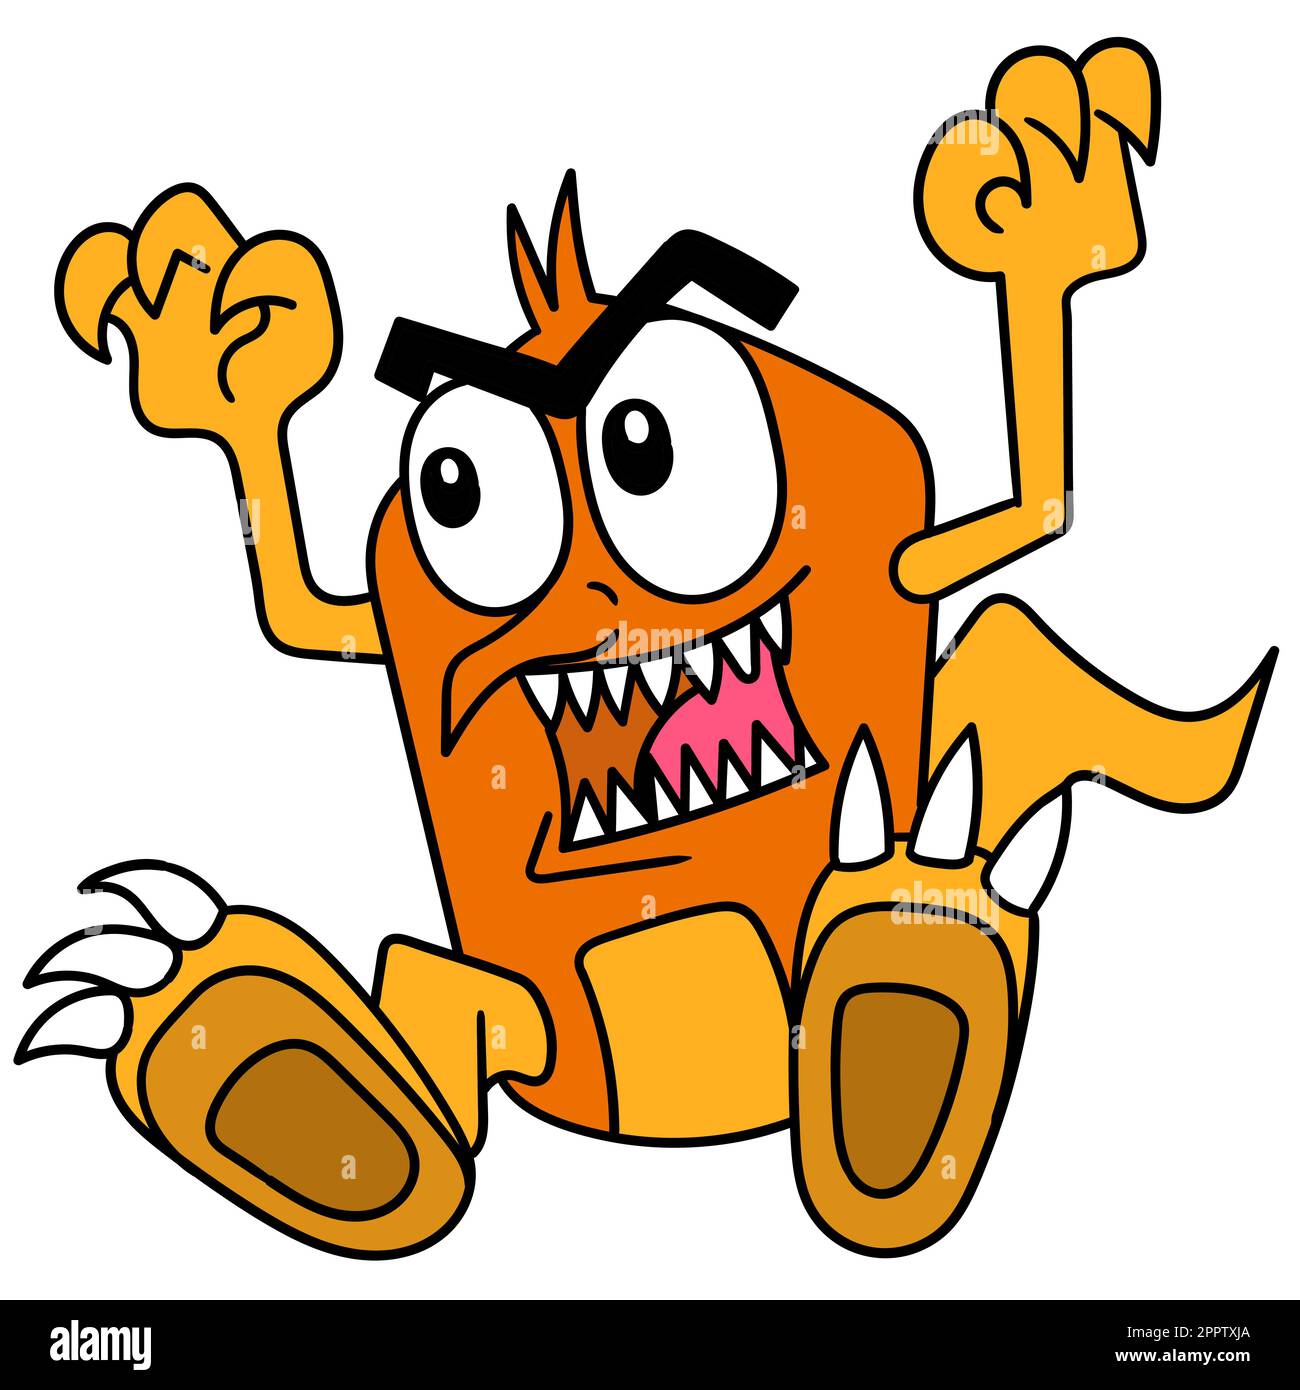 mostri spaventosi con denti affilati hanno cercato di mordere, doodle icona immagine kawaii Illustrazione Vettoriale